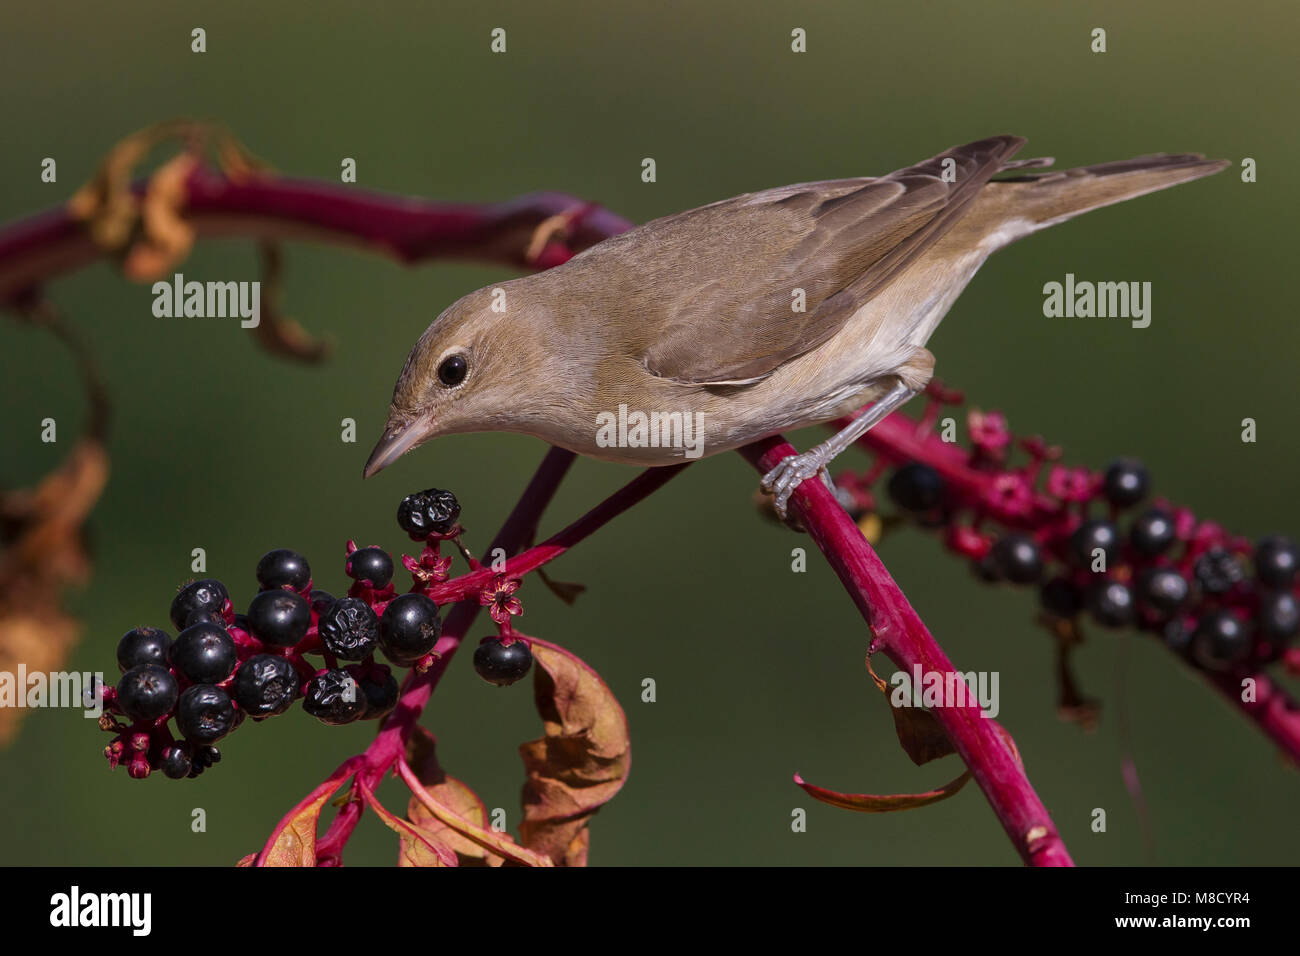 Tuinfluiter foeragerend op bessen; Garden Warbler foraging on berries Stock Photo